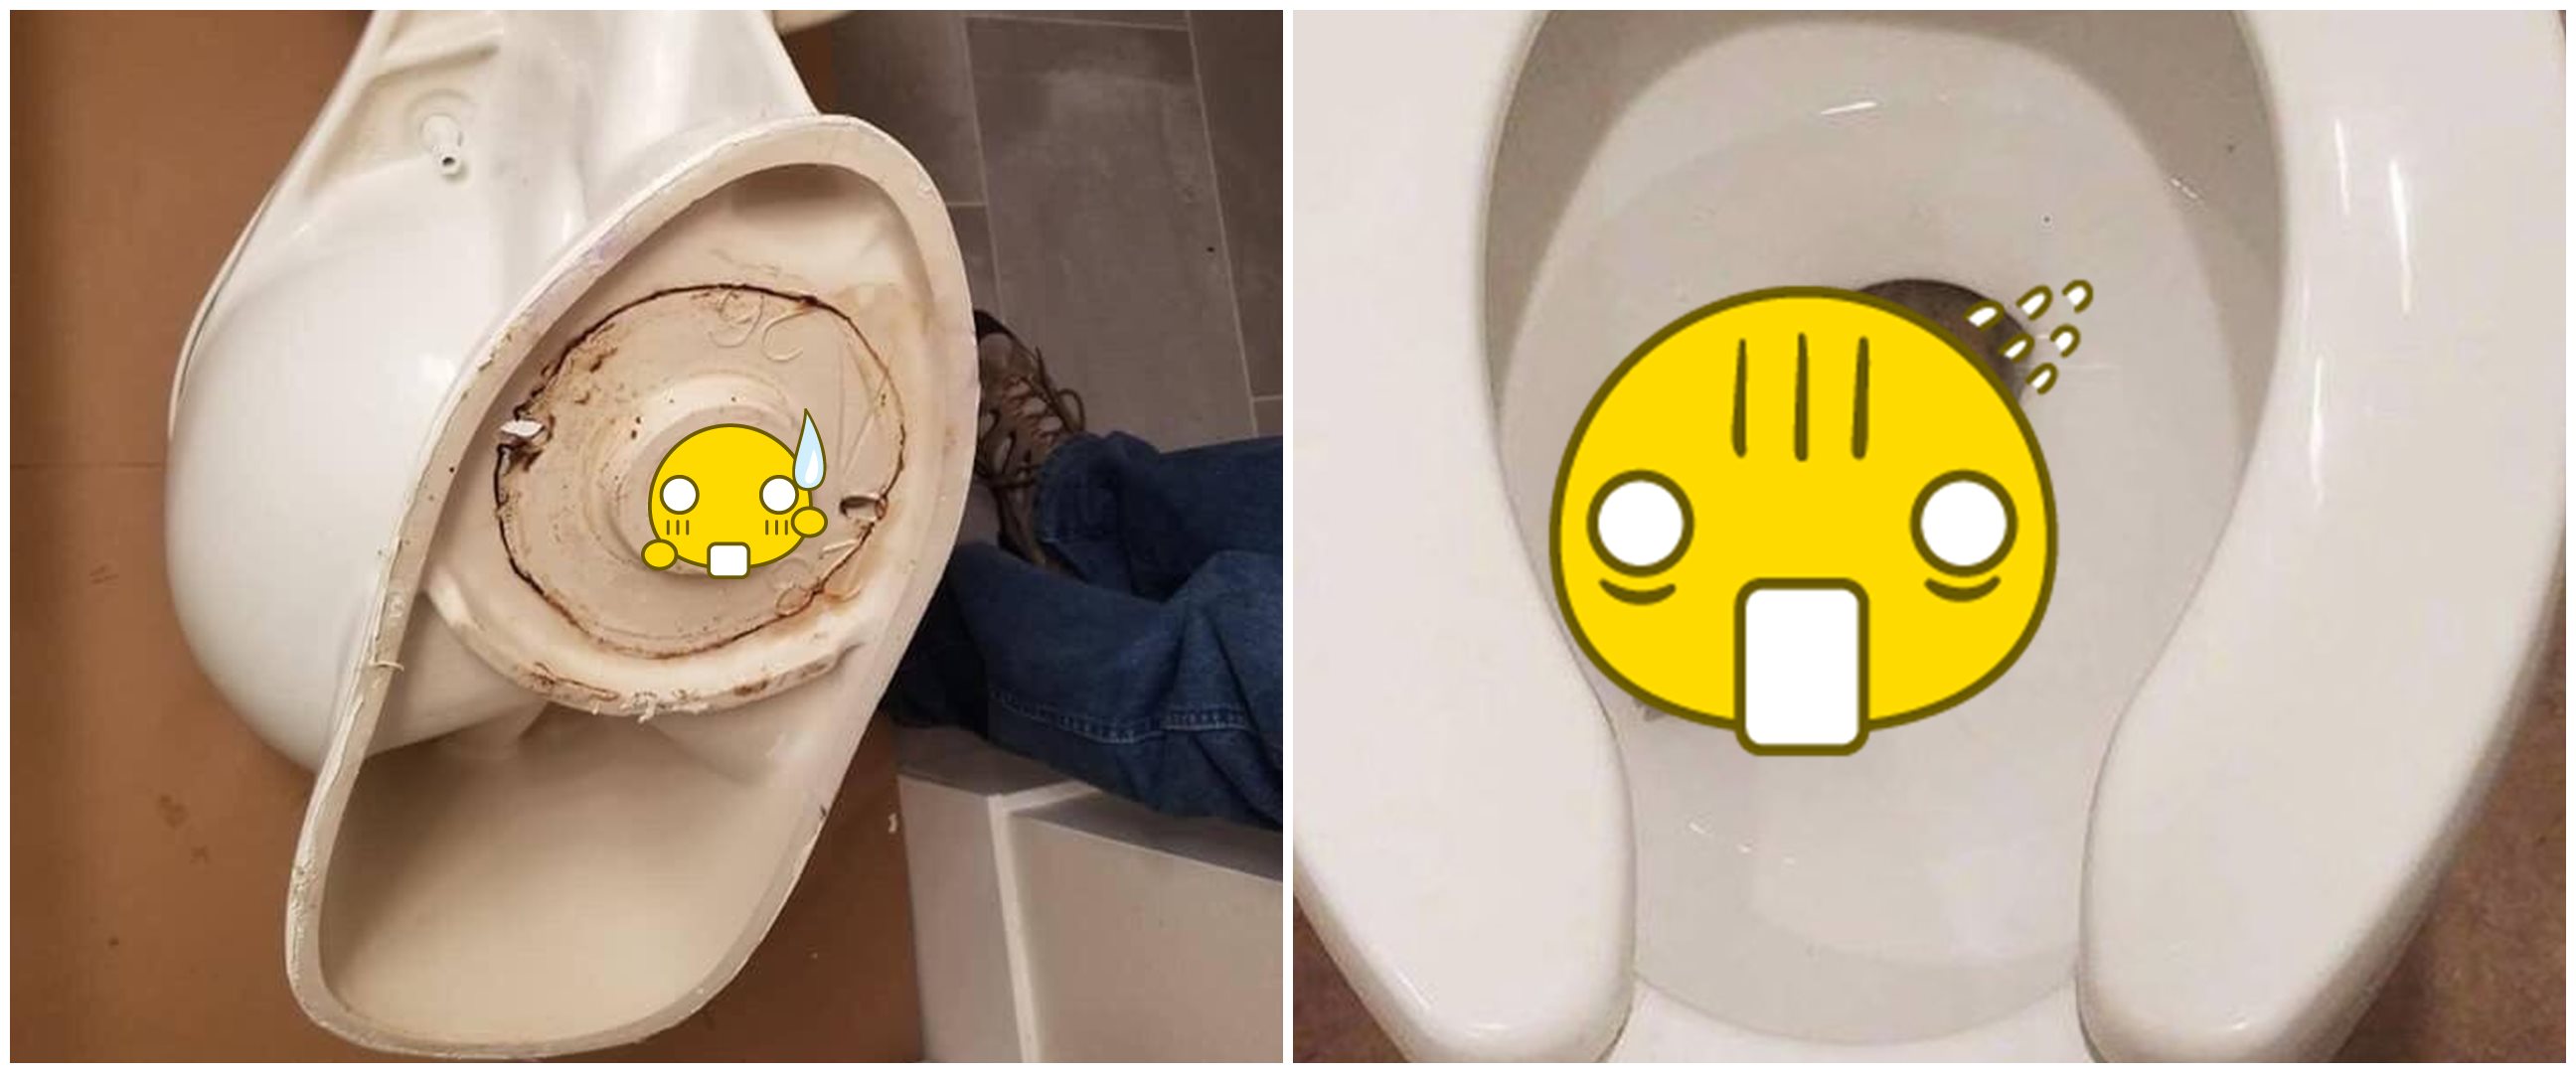 11 Penemuan aneh di toilet ini bikin kamu nggak jadi kebelet